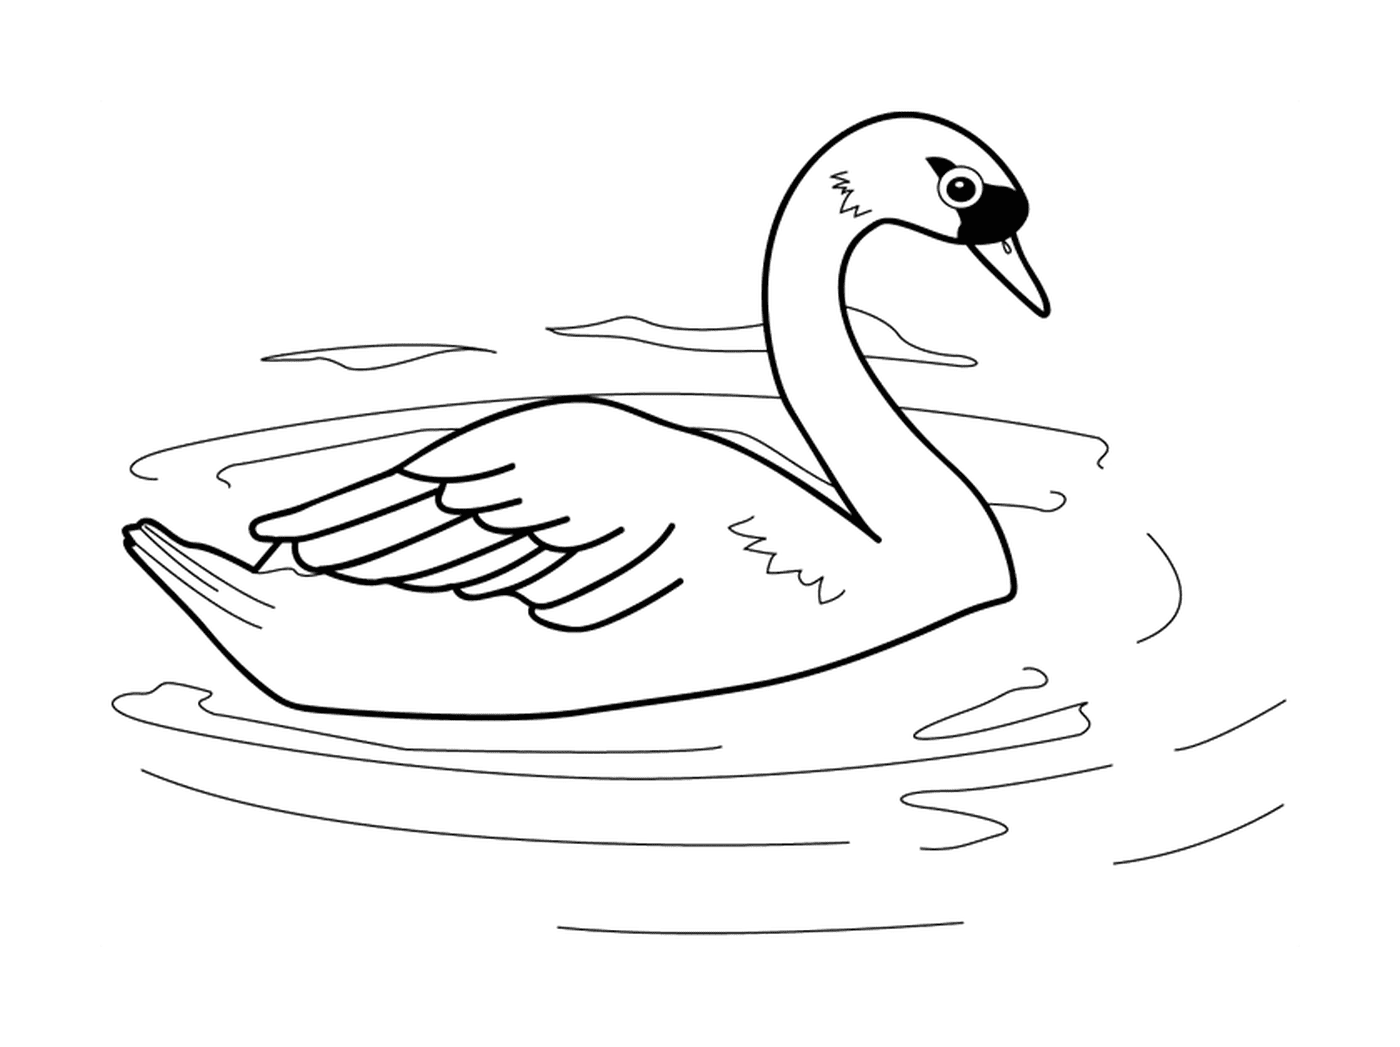  Un cisne en el agua 